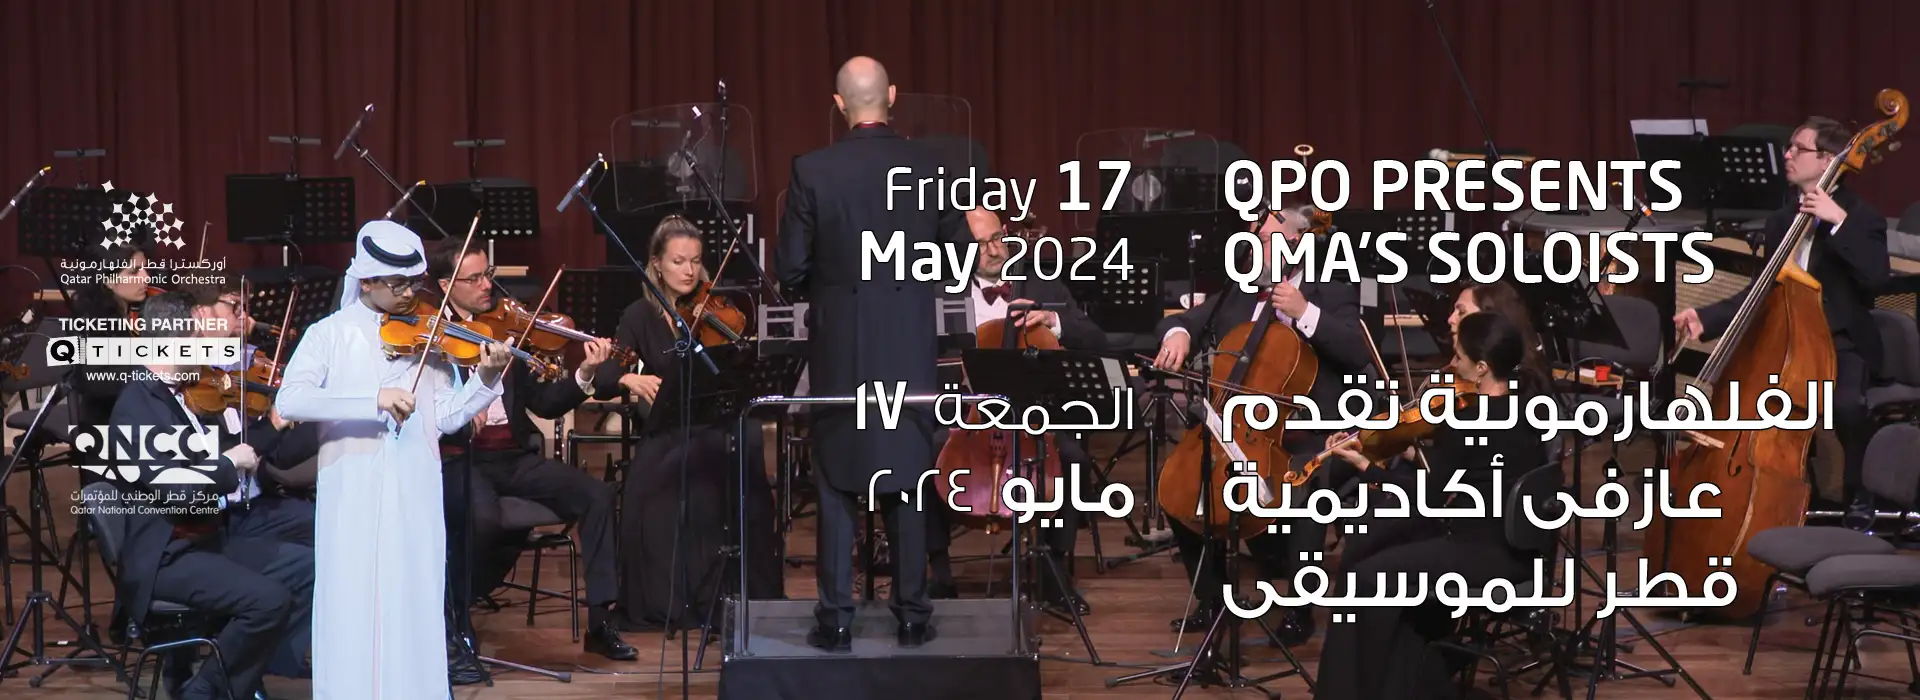 QPO Presents QMA's Soloists